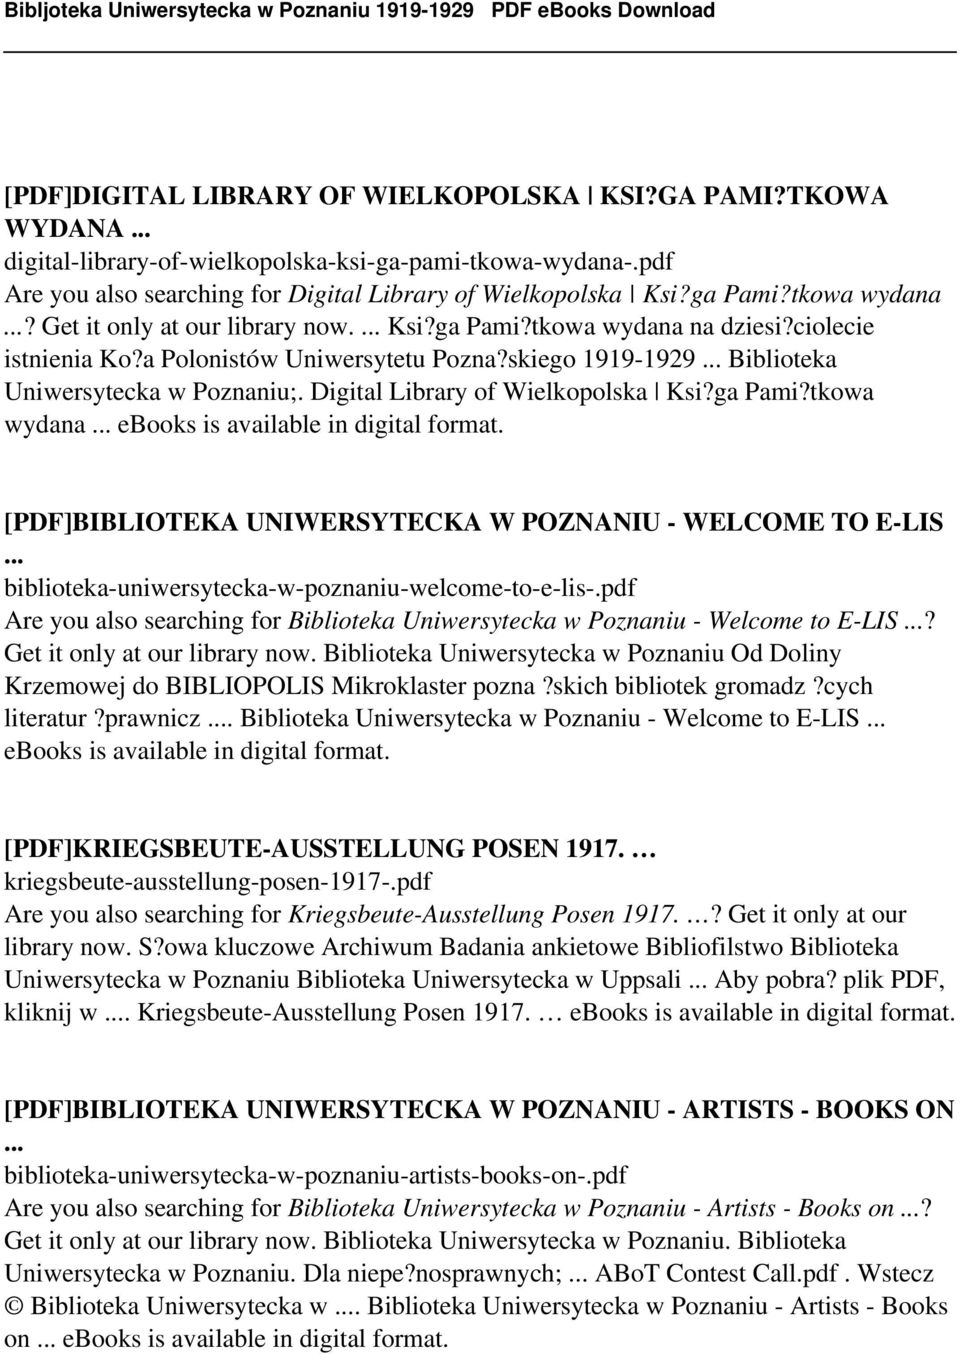 Digital Library of Wielkopolska Ksi?ga Pami?tkowa wydana... ebooks is available in digital format. [PDF]BIBLIOTEKA UNIWERSYTECKA W POZNANIU - WELCOME TO E-LIS.